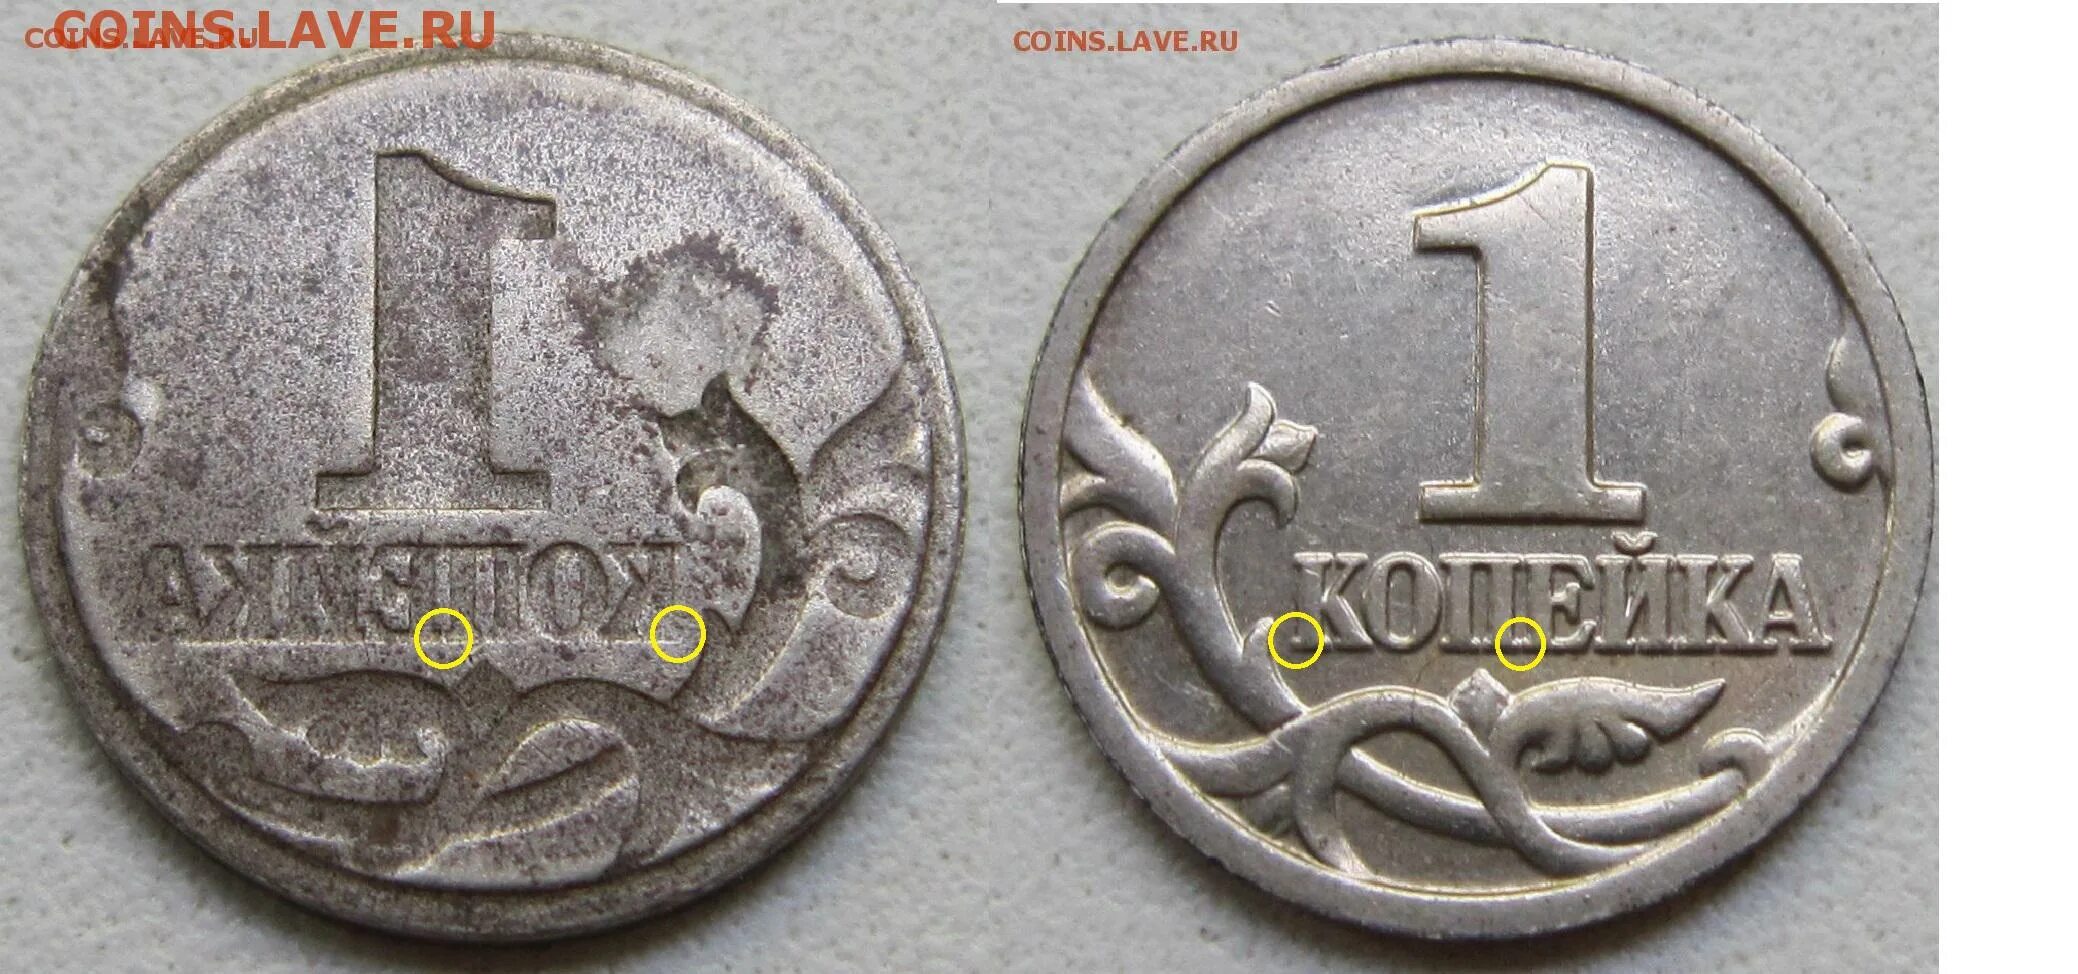 Копейка 1997. 1 Копейка 1997 года. 1 Копейка образца 1997 года. Монеты образца 1997. Копейки 1997 года стоимость